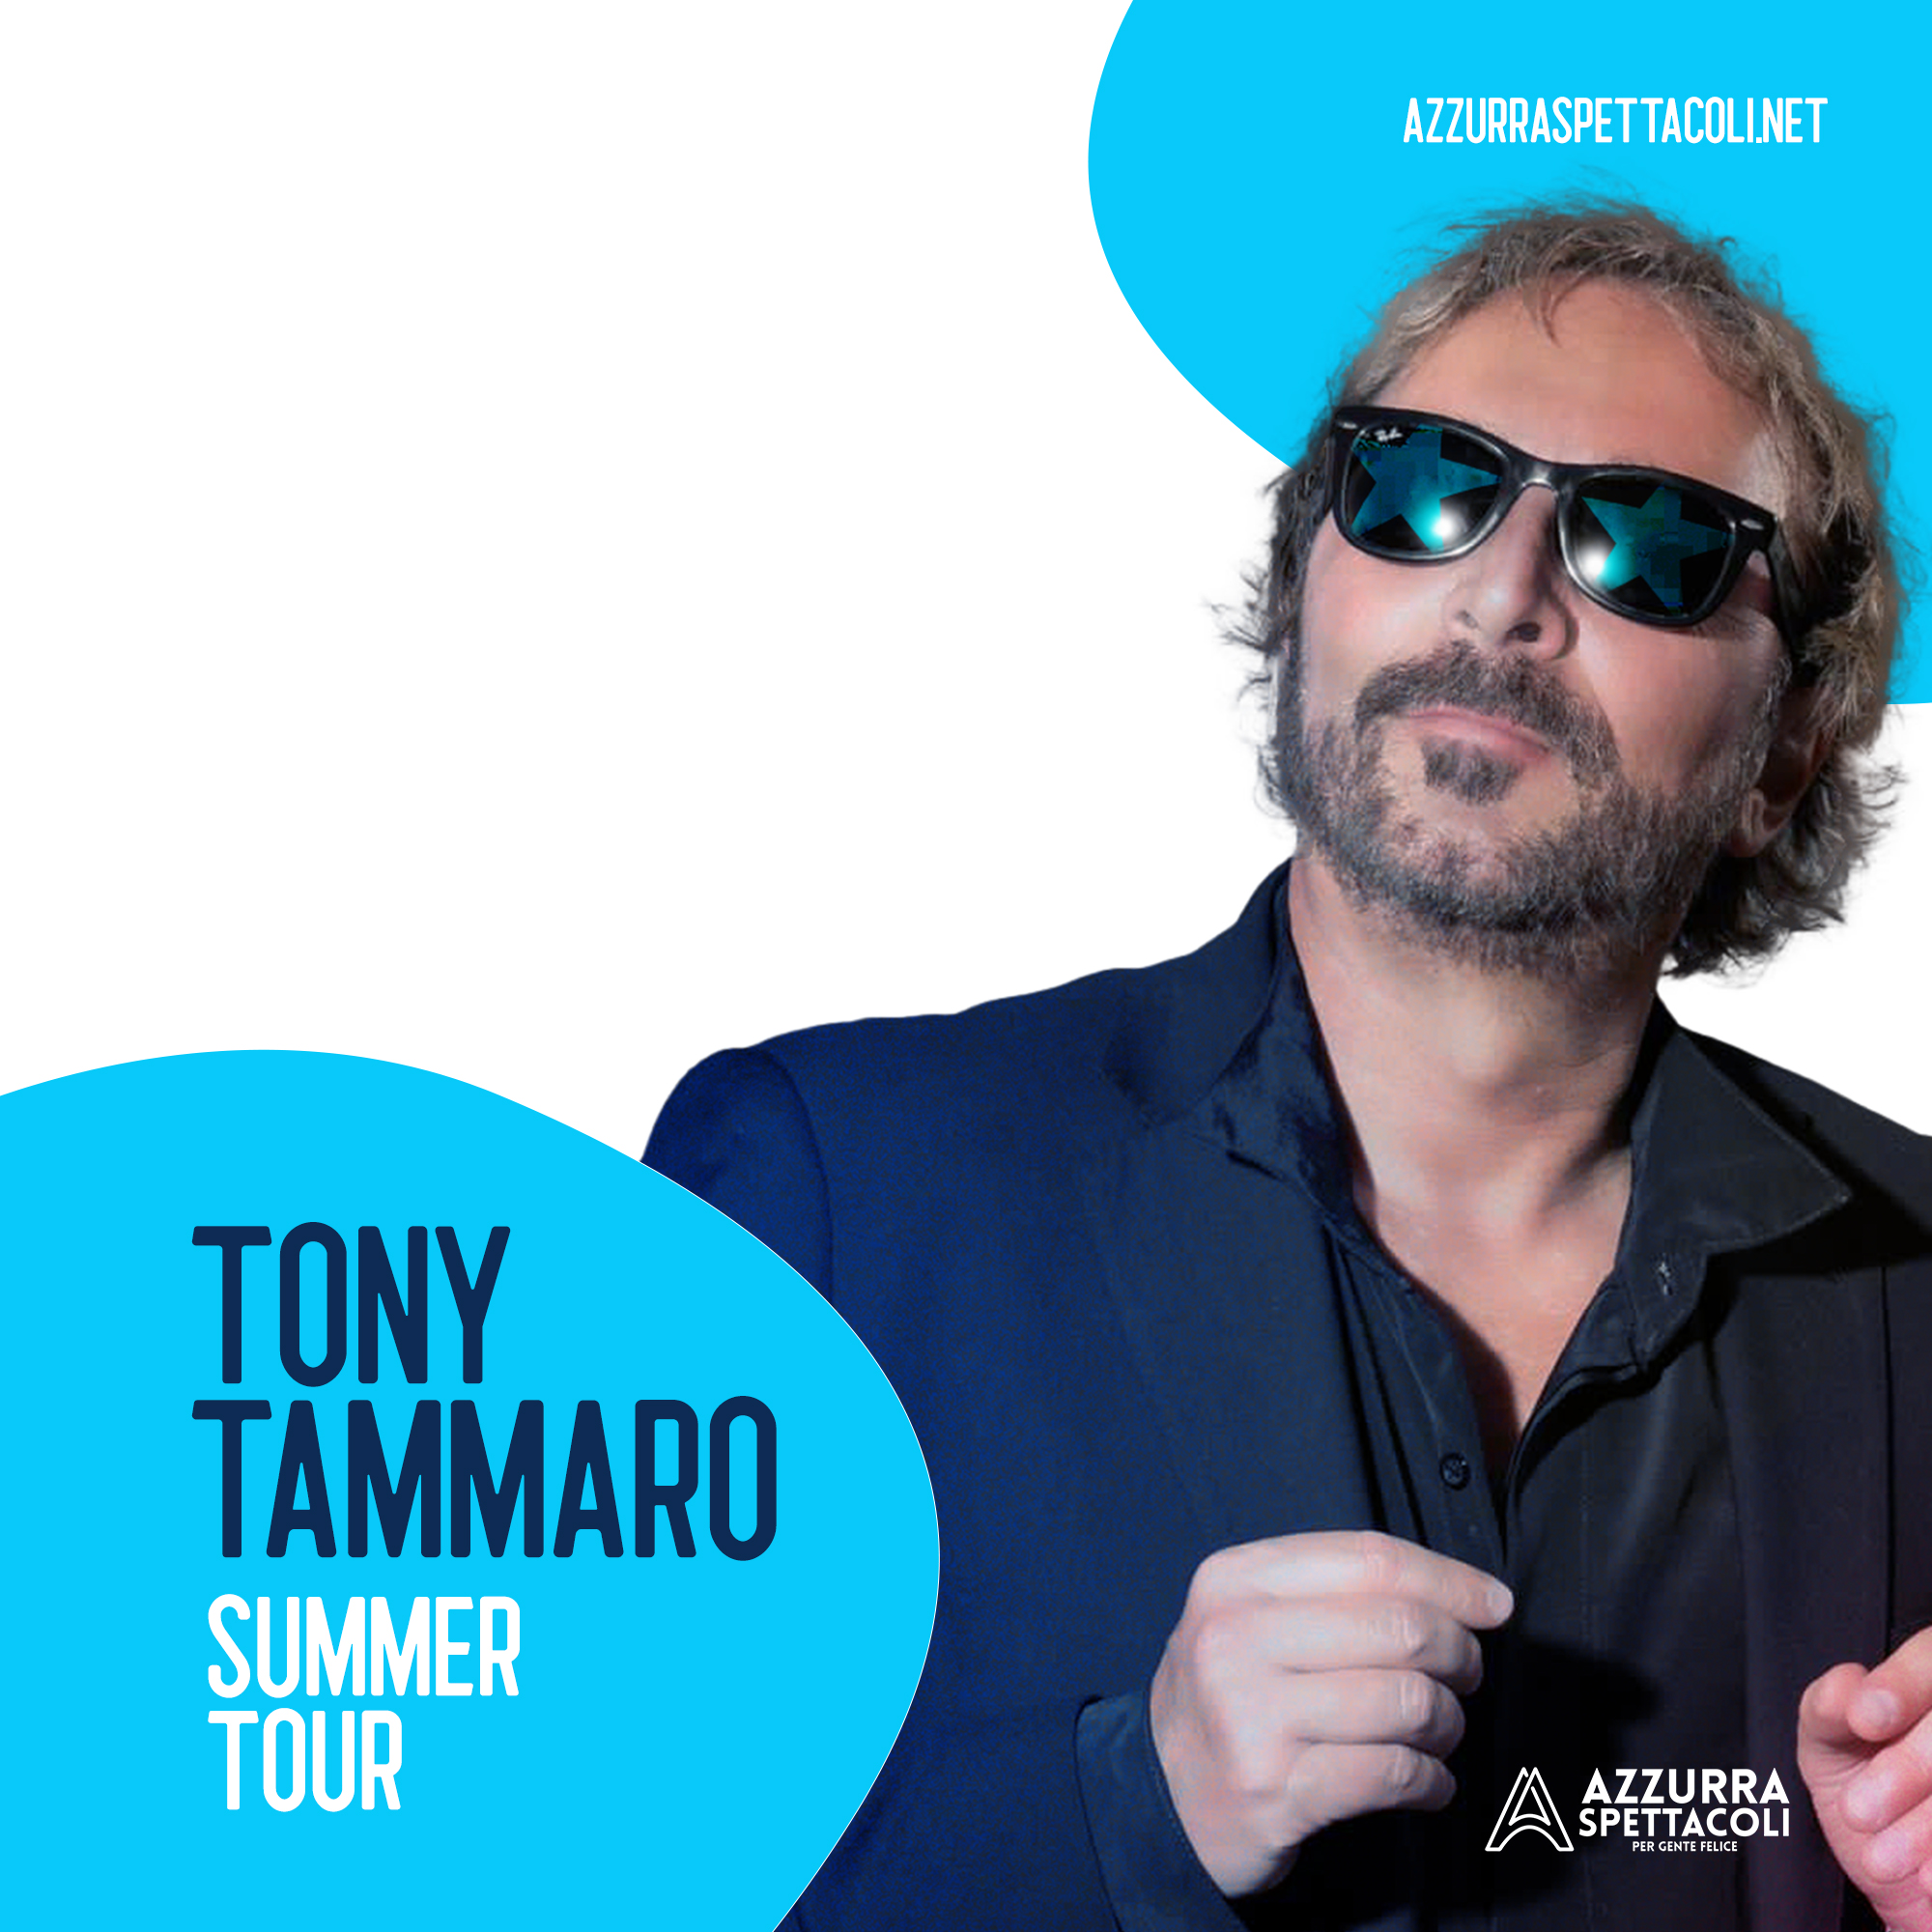 TONY TAMMARO Concerto Acustico